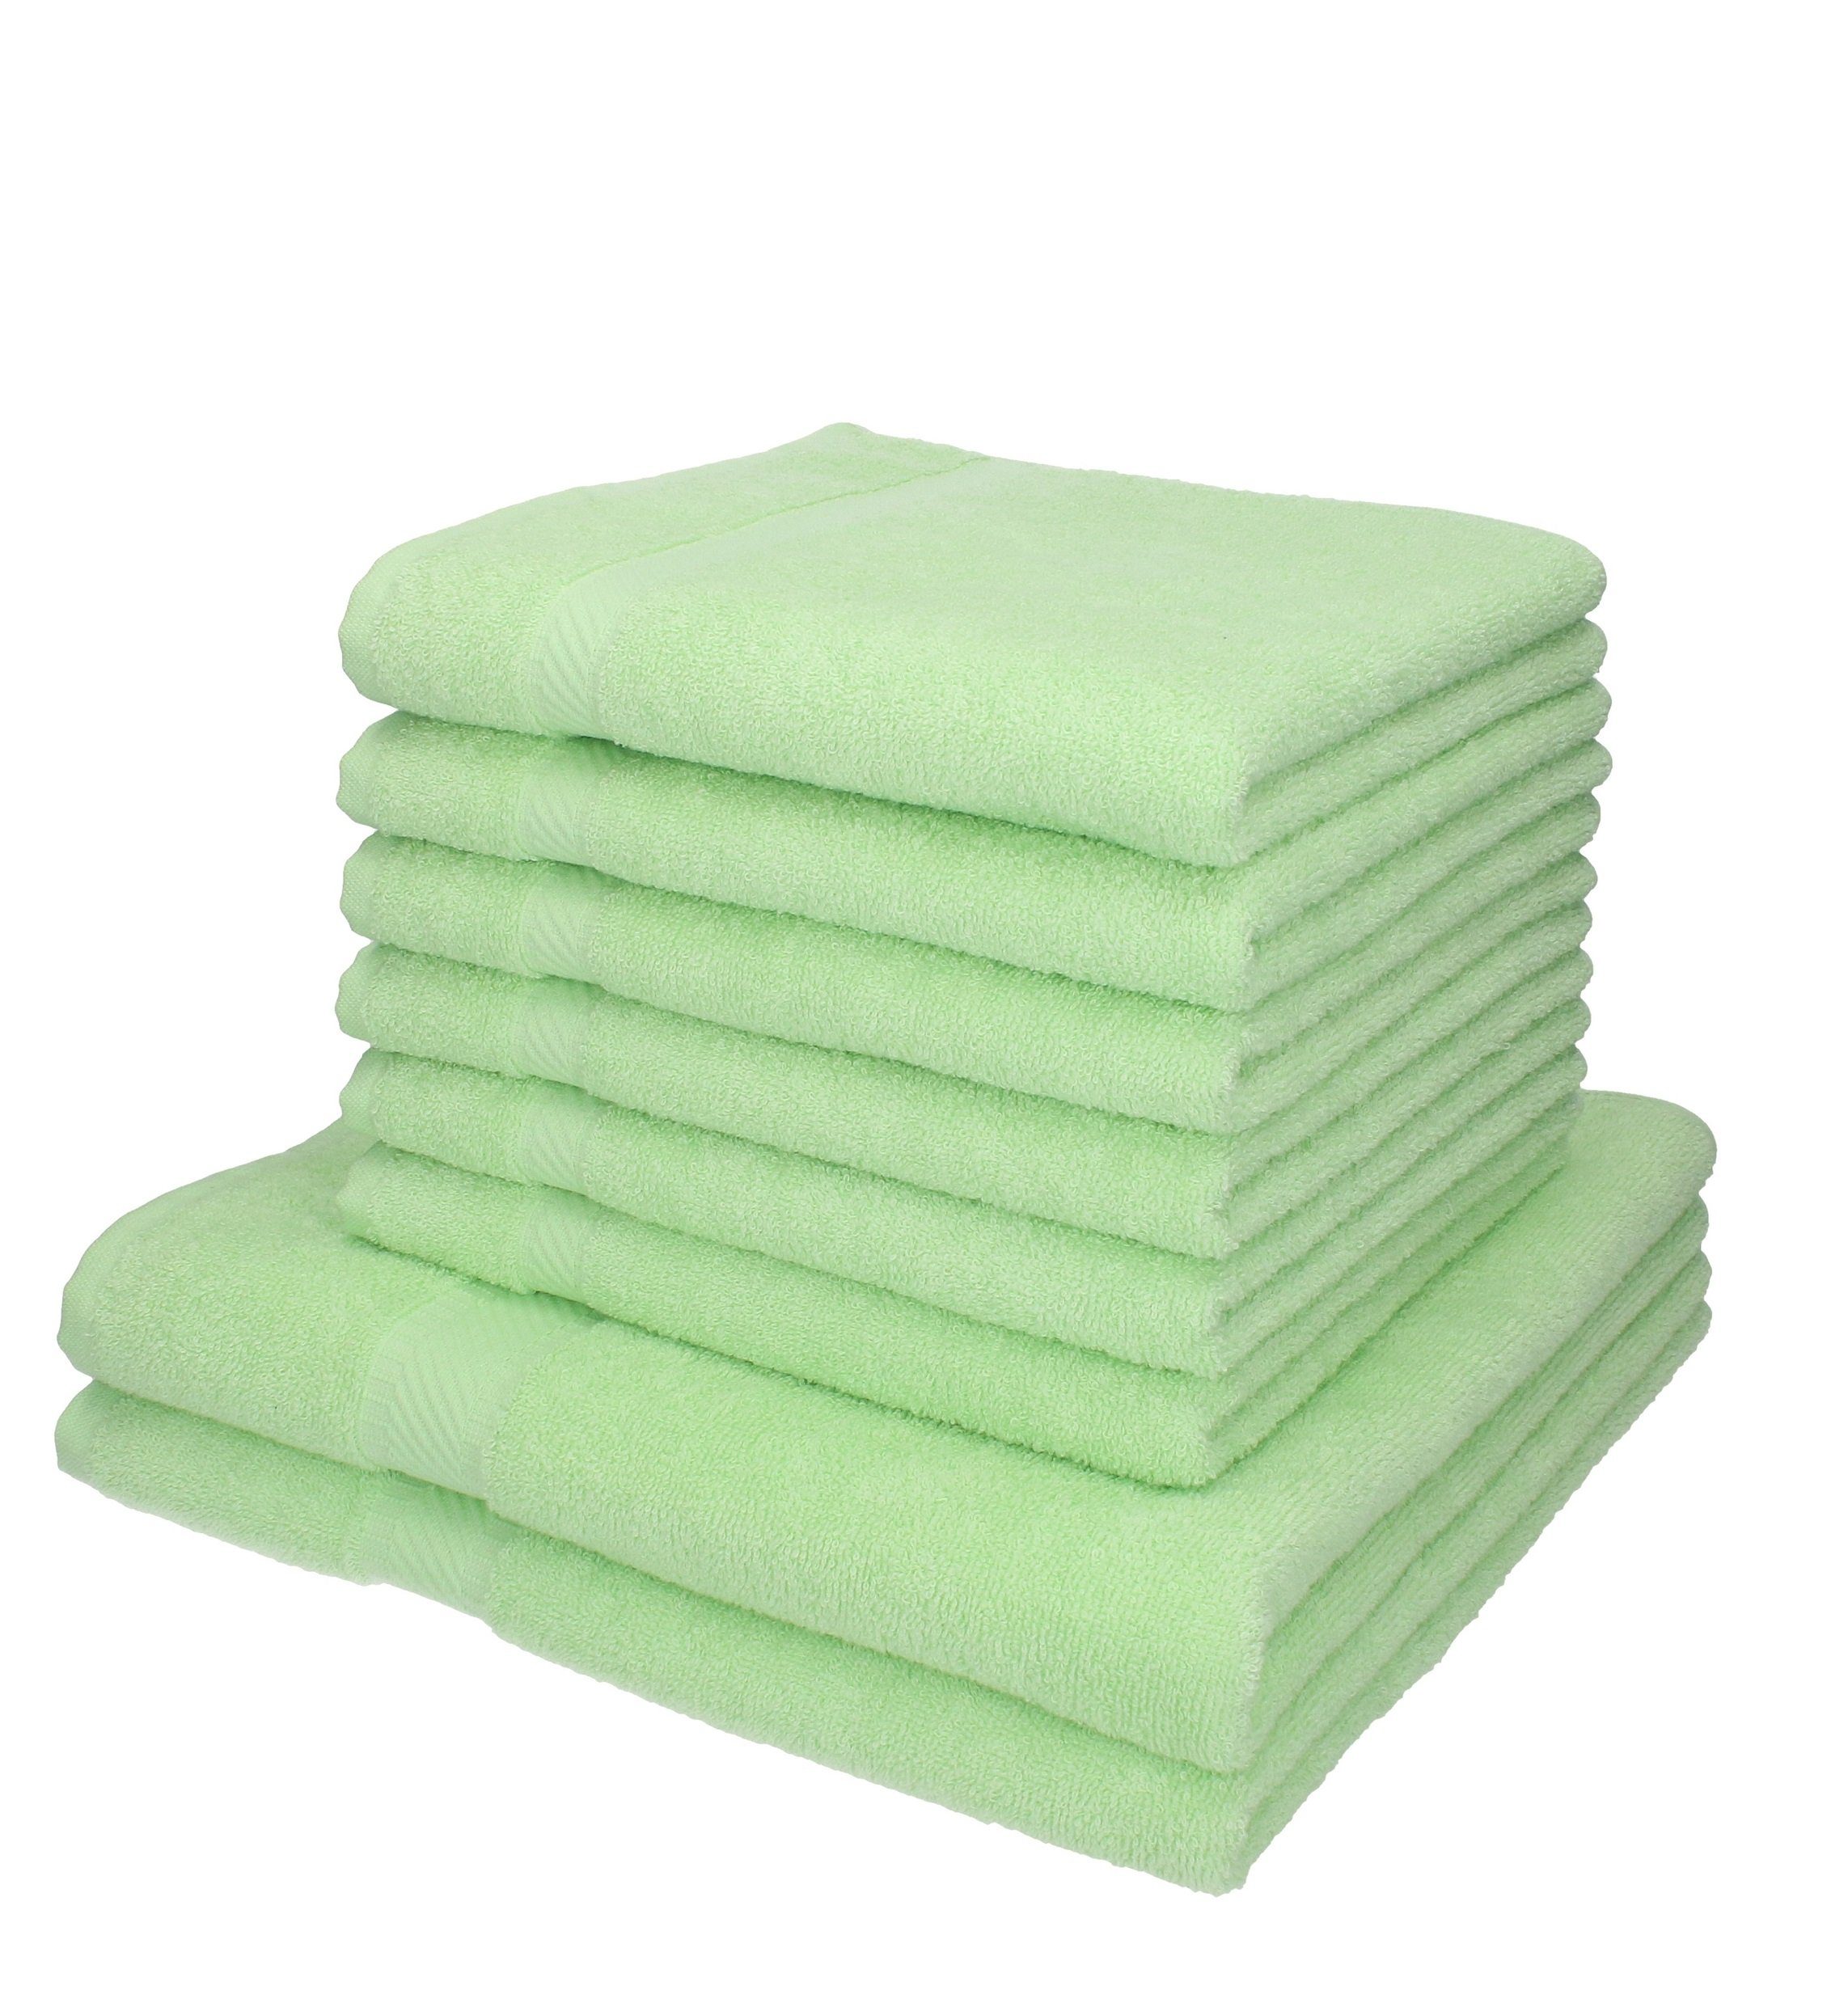 Betz Handtuch Set 8-TLG. Handtuch-Set Palermo Farbe grün, 100% Baumwolle